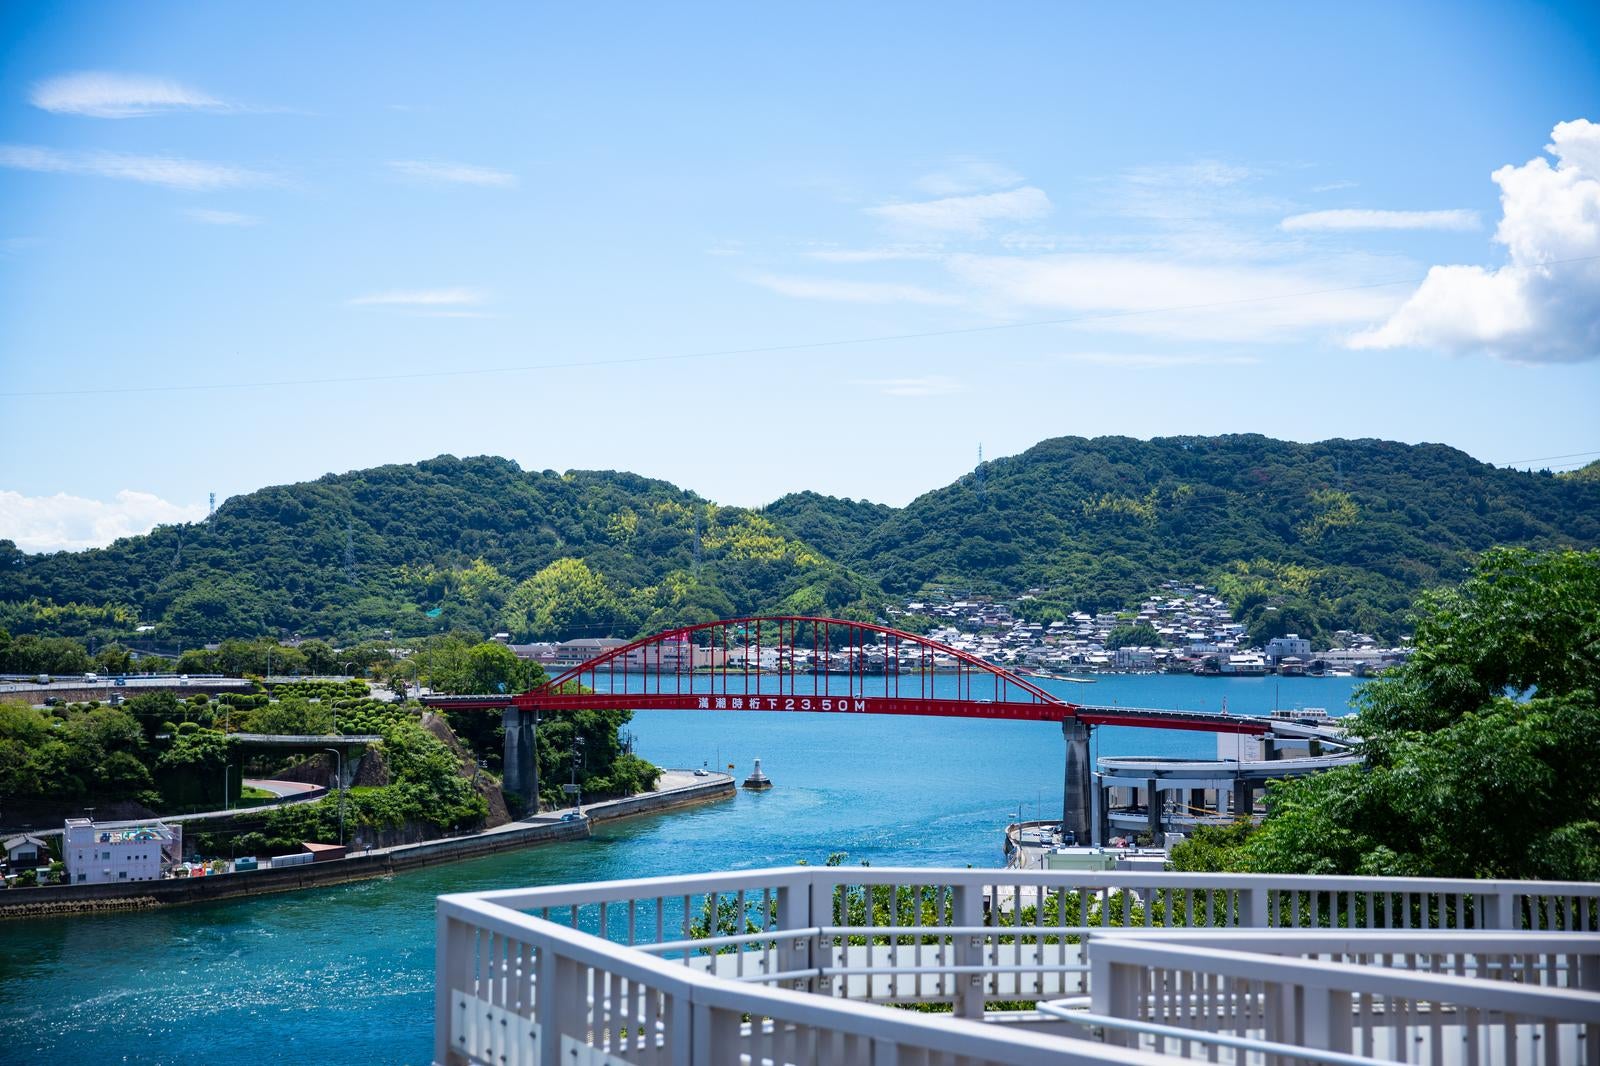 「広島の日招き大橋」の写真